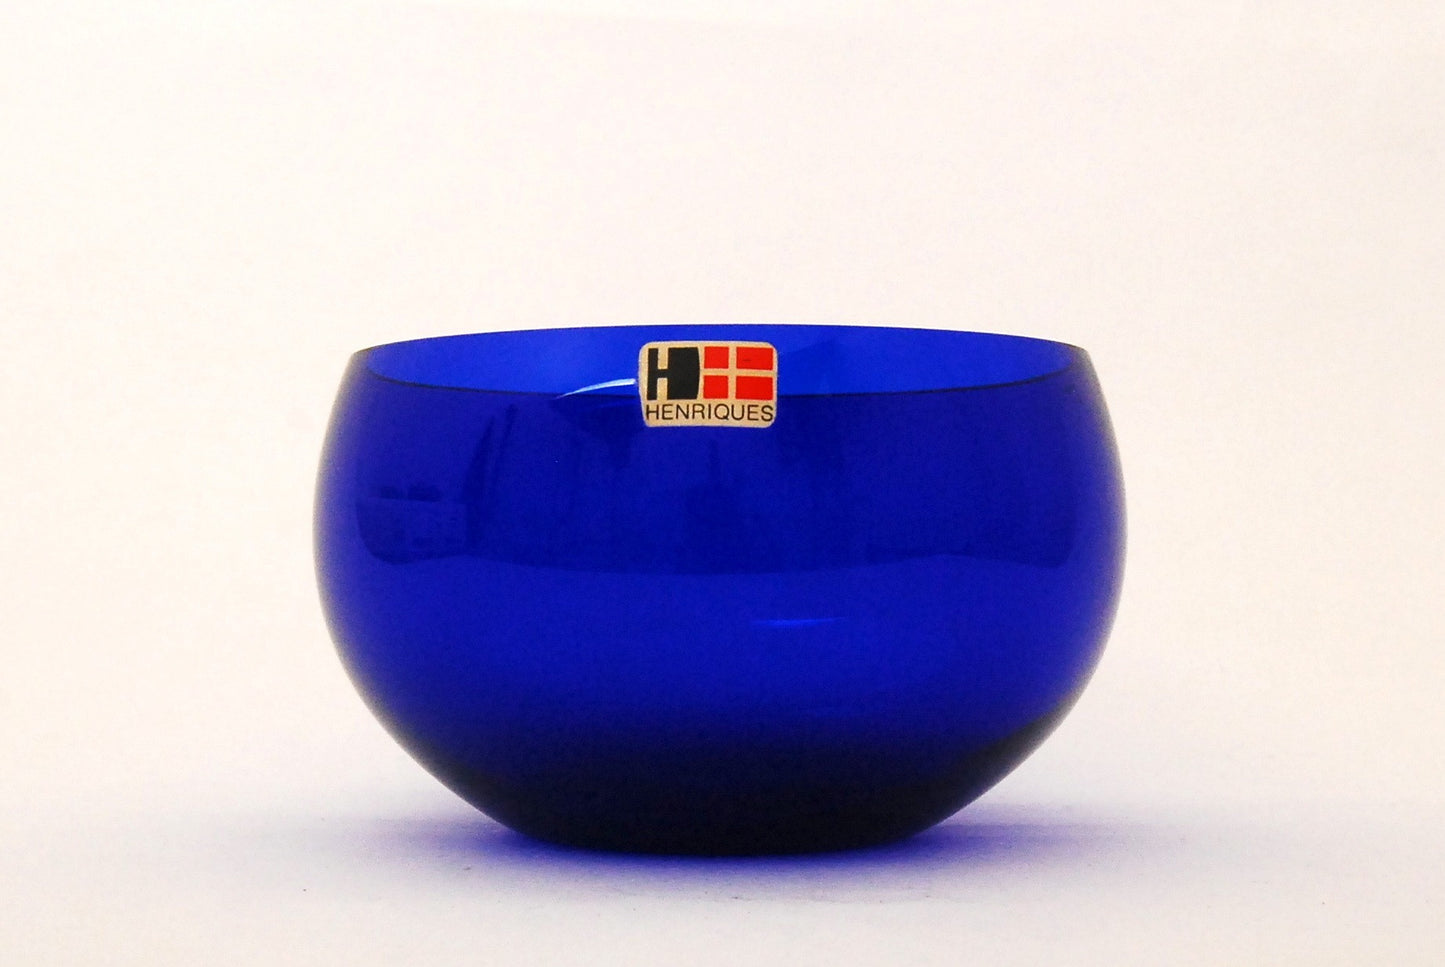 Blue glass bowl by Henriques